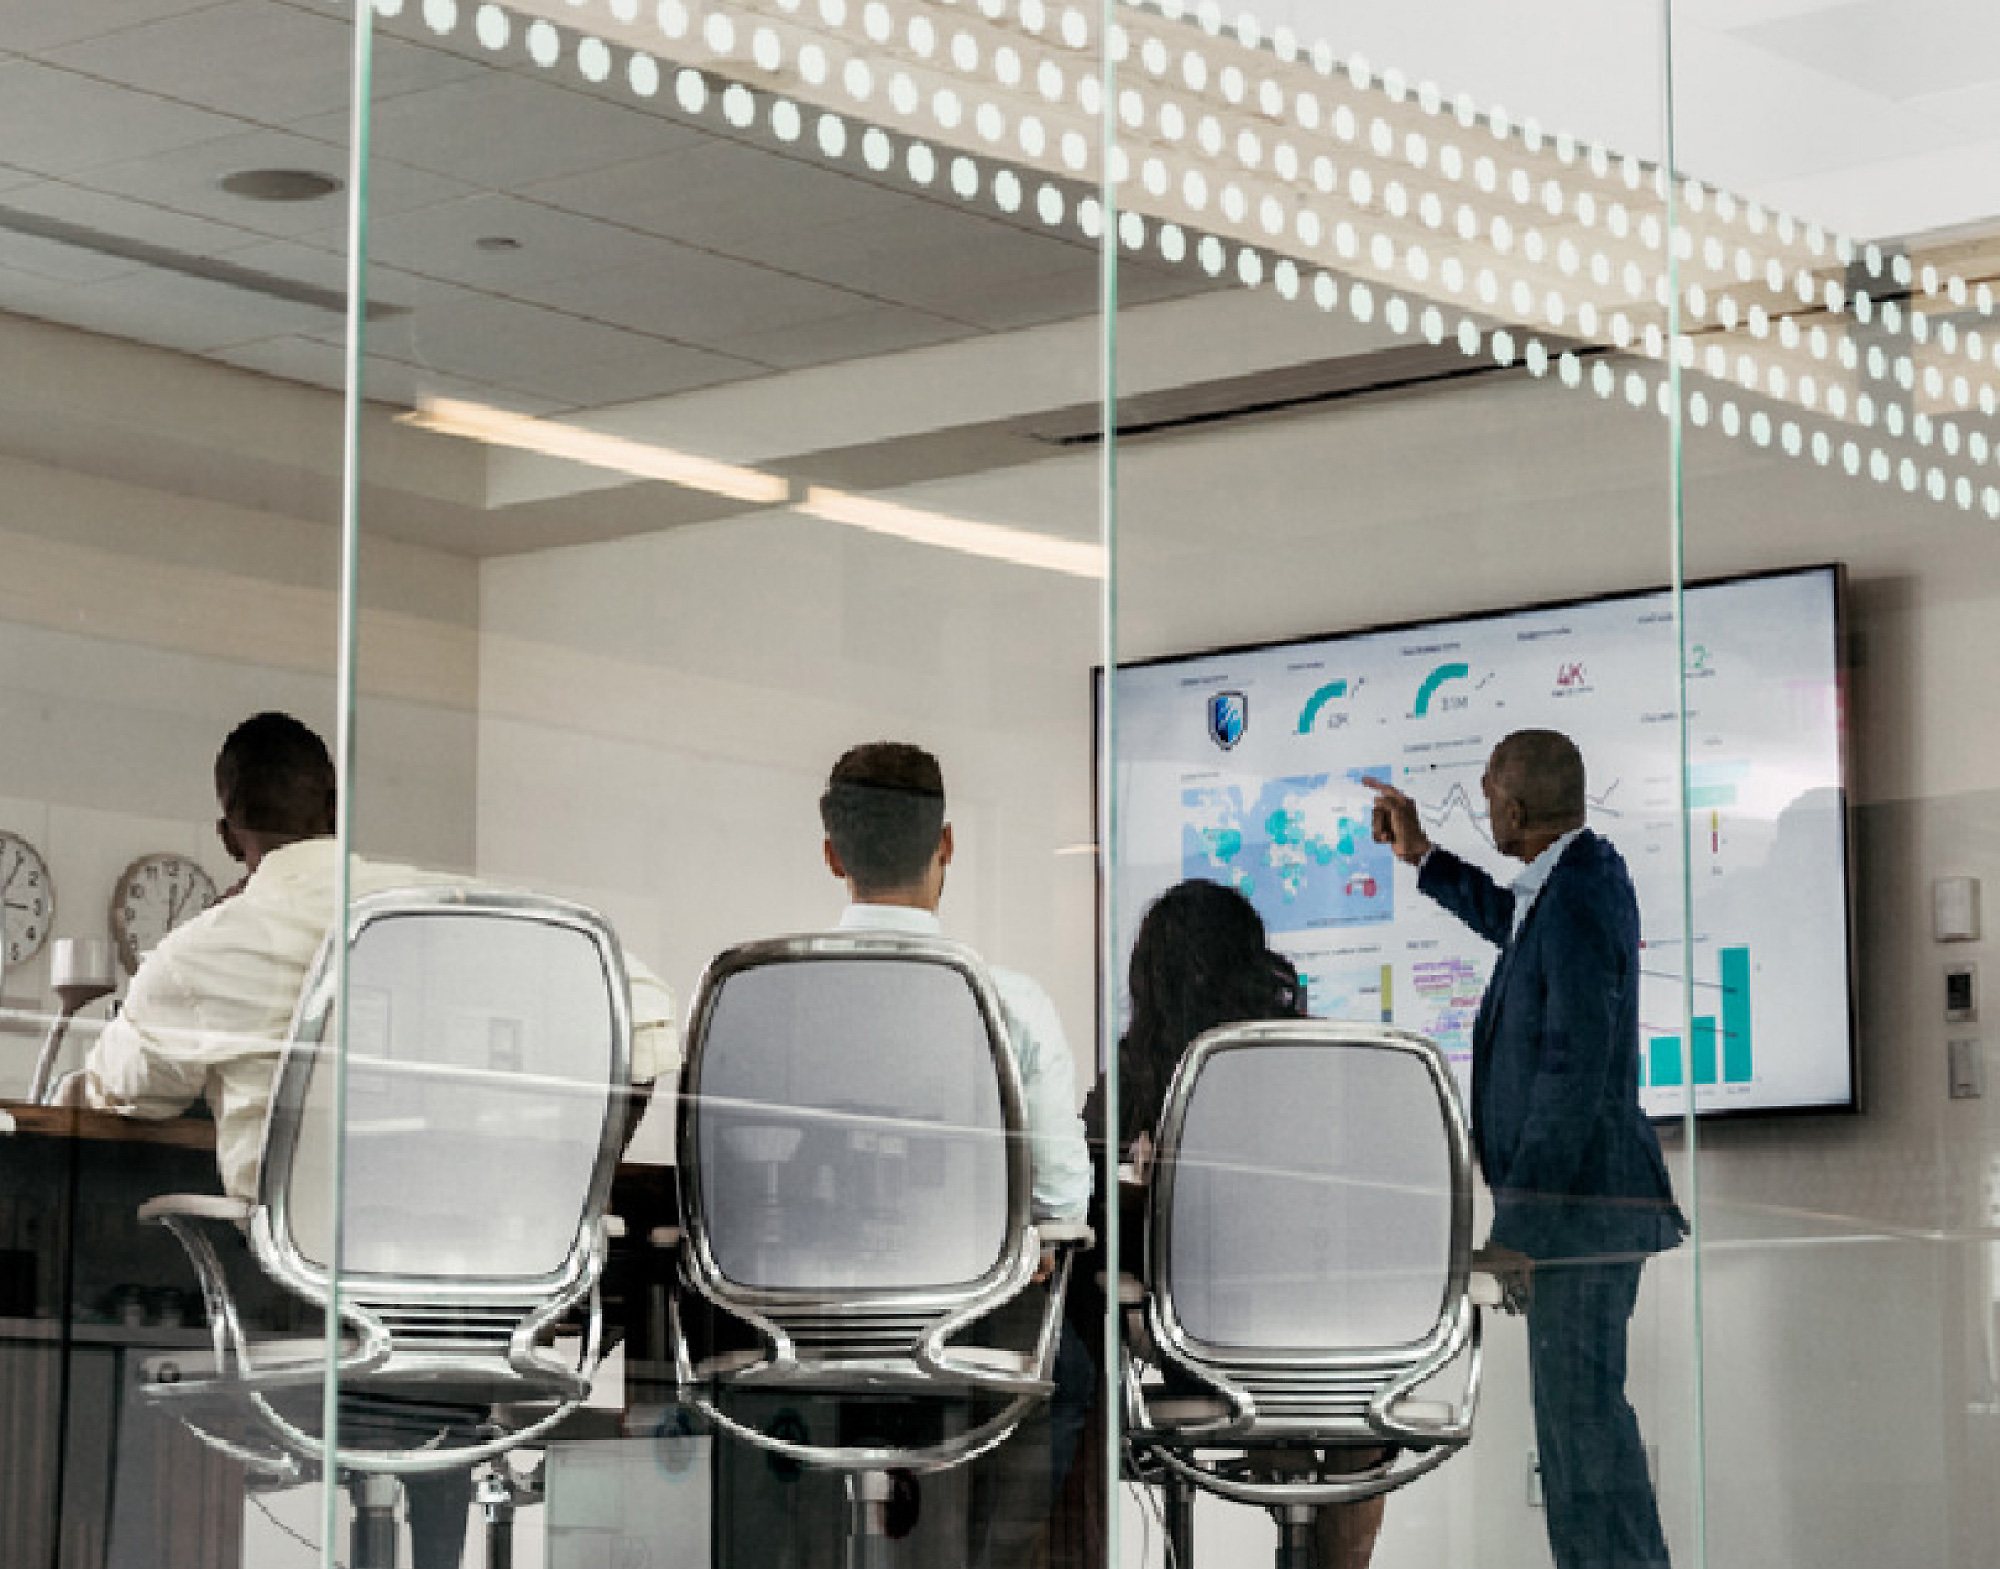 Vier professionals in een vergaderruimte, één die naar digitale gegevens wijst die worden weergegeven op een groot scherm, bekeken door een glazen wand.